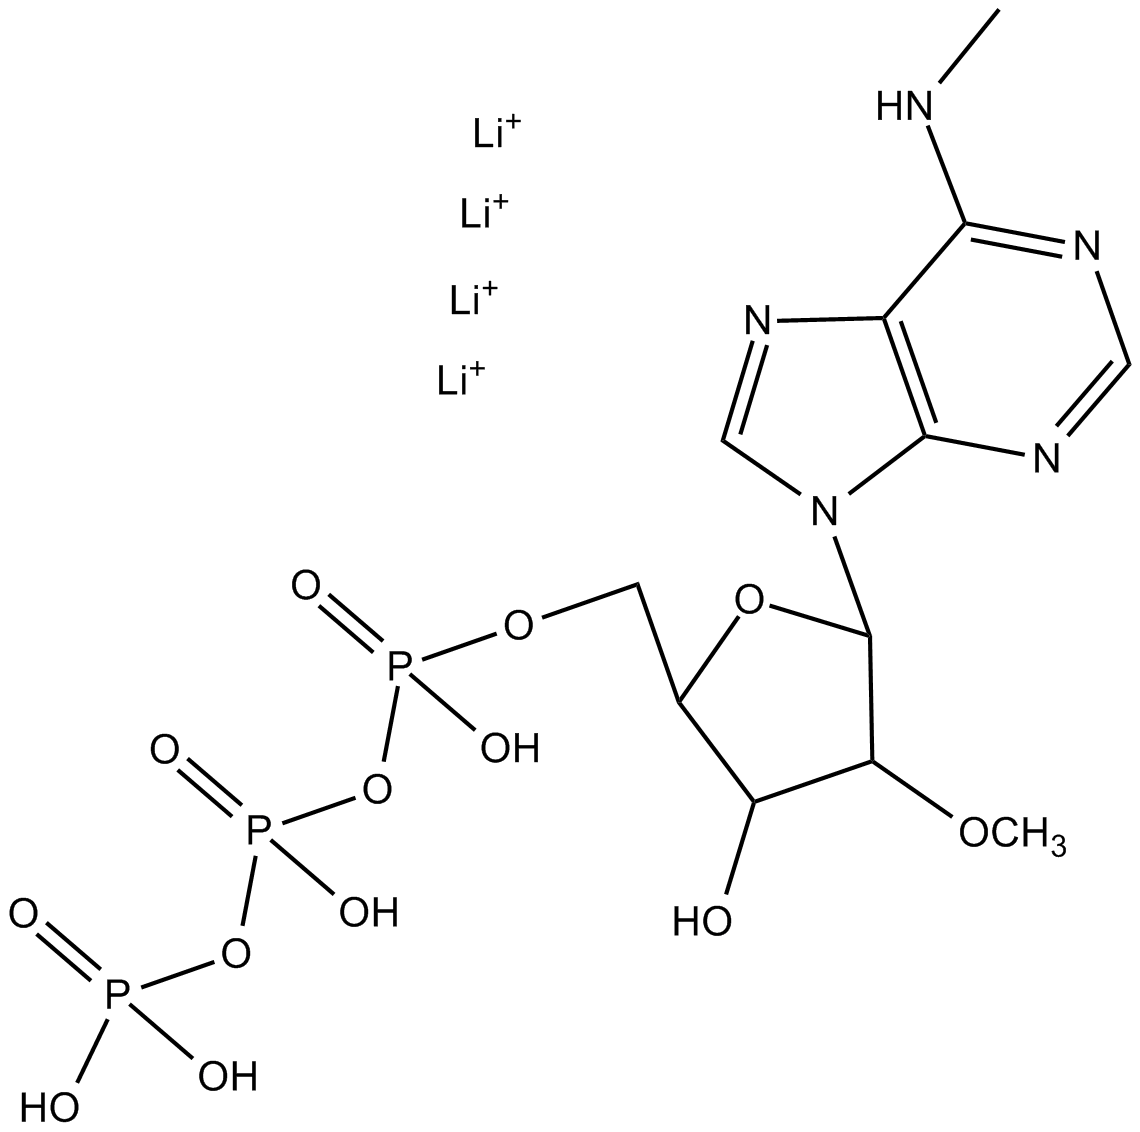 2'-O-Methyl-N6-Methyl-ATP